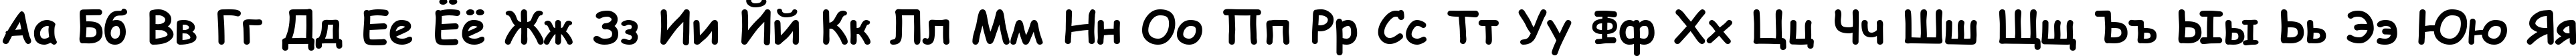 Пример написания русского алфавита шрифтом Comic Sans MS Bold